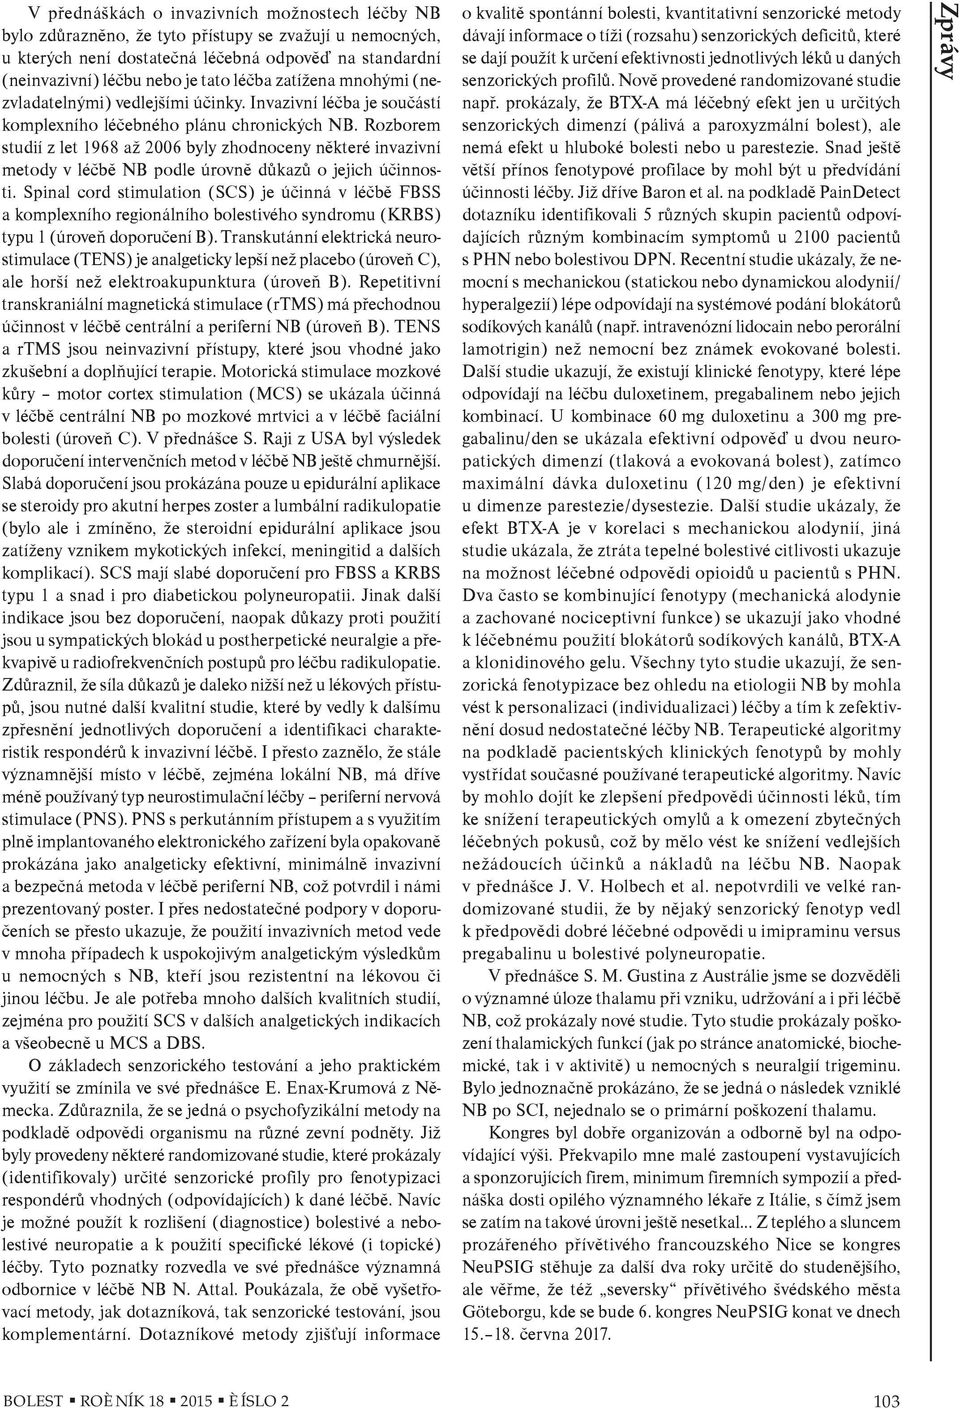 Rozborem studií z let 1968 až 2006 byly zhodnoceny nìkteré invazivní metody v léèbì NB podle úrovnì dùkazù o jejich úèinnosti.